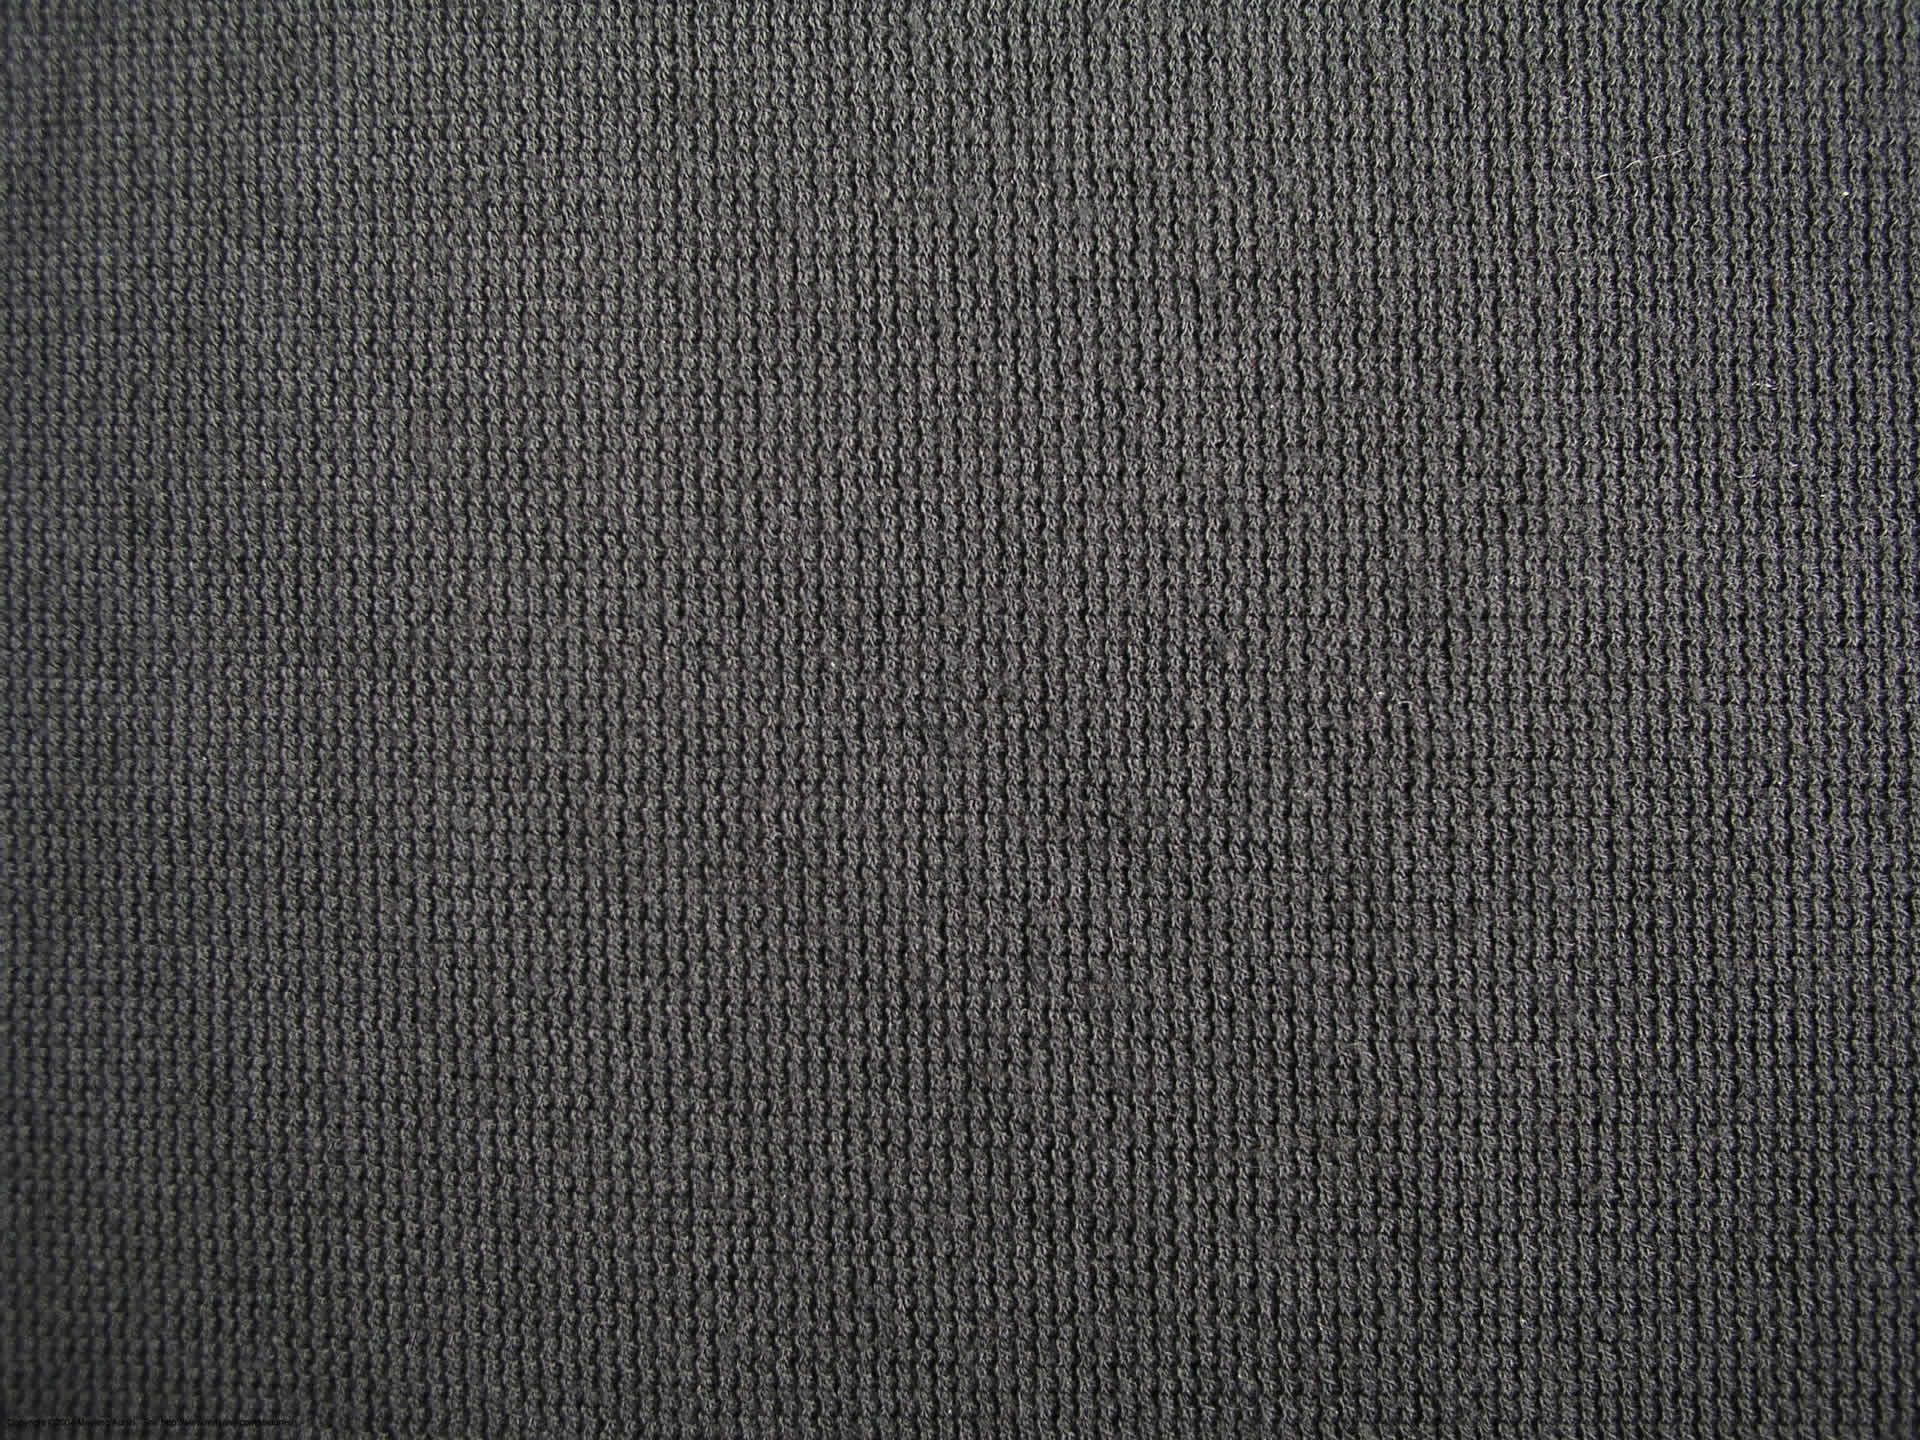 テクスチャ壁紙,黒,褐色,パターン,繊維,織布